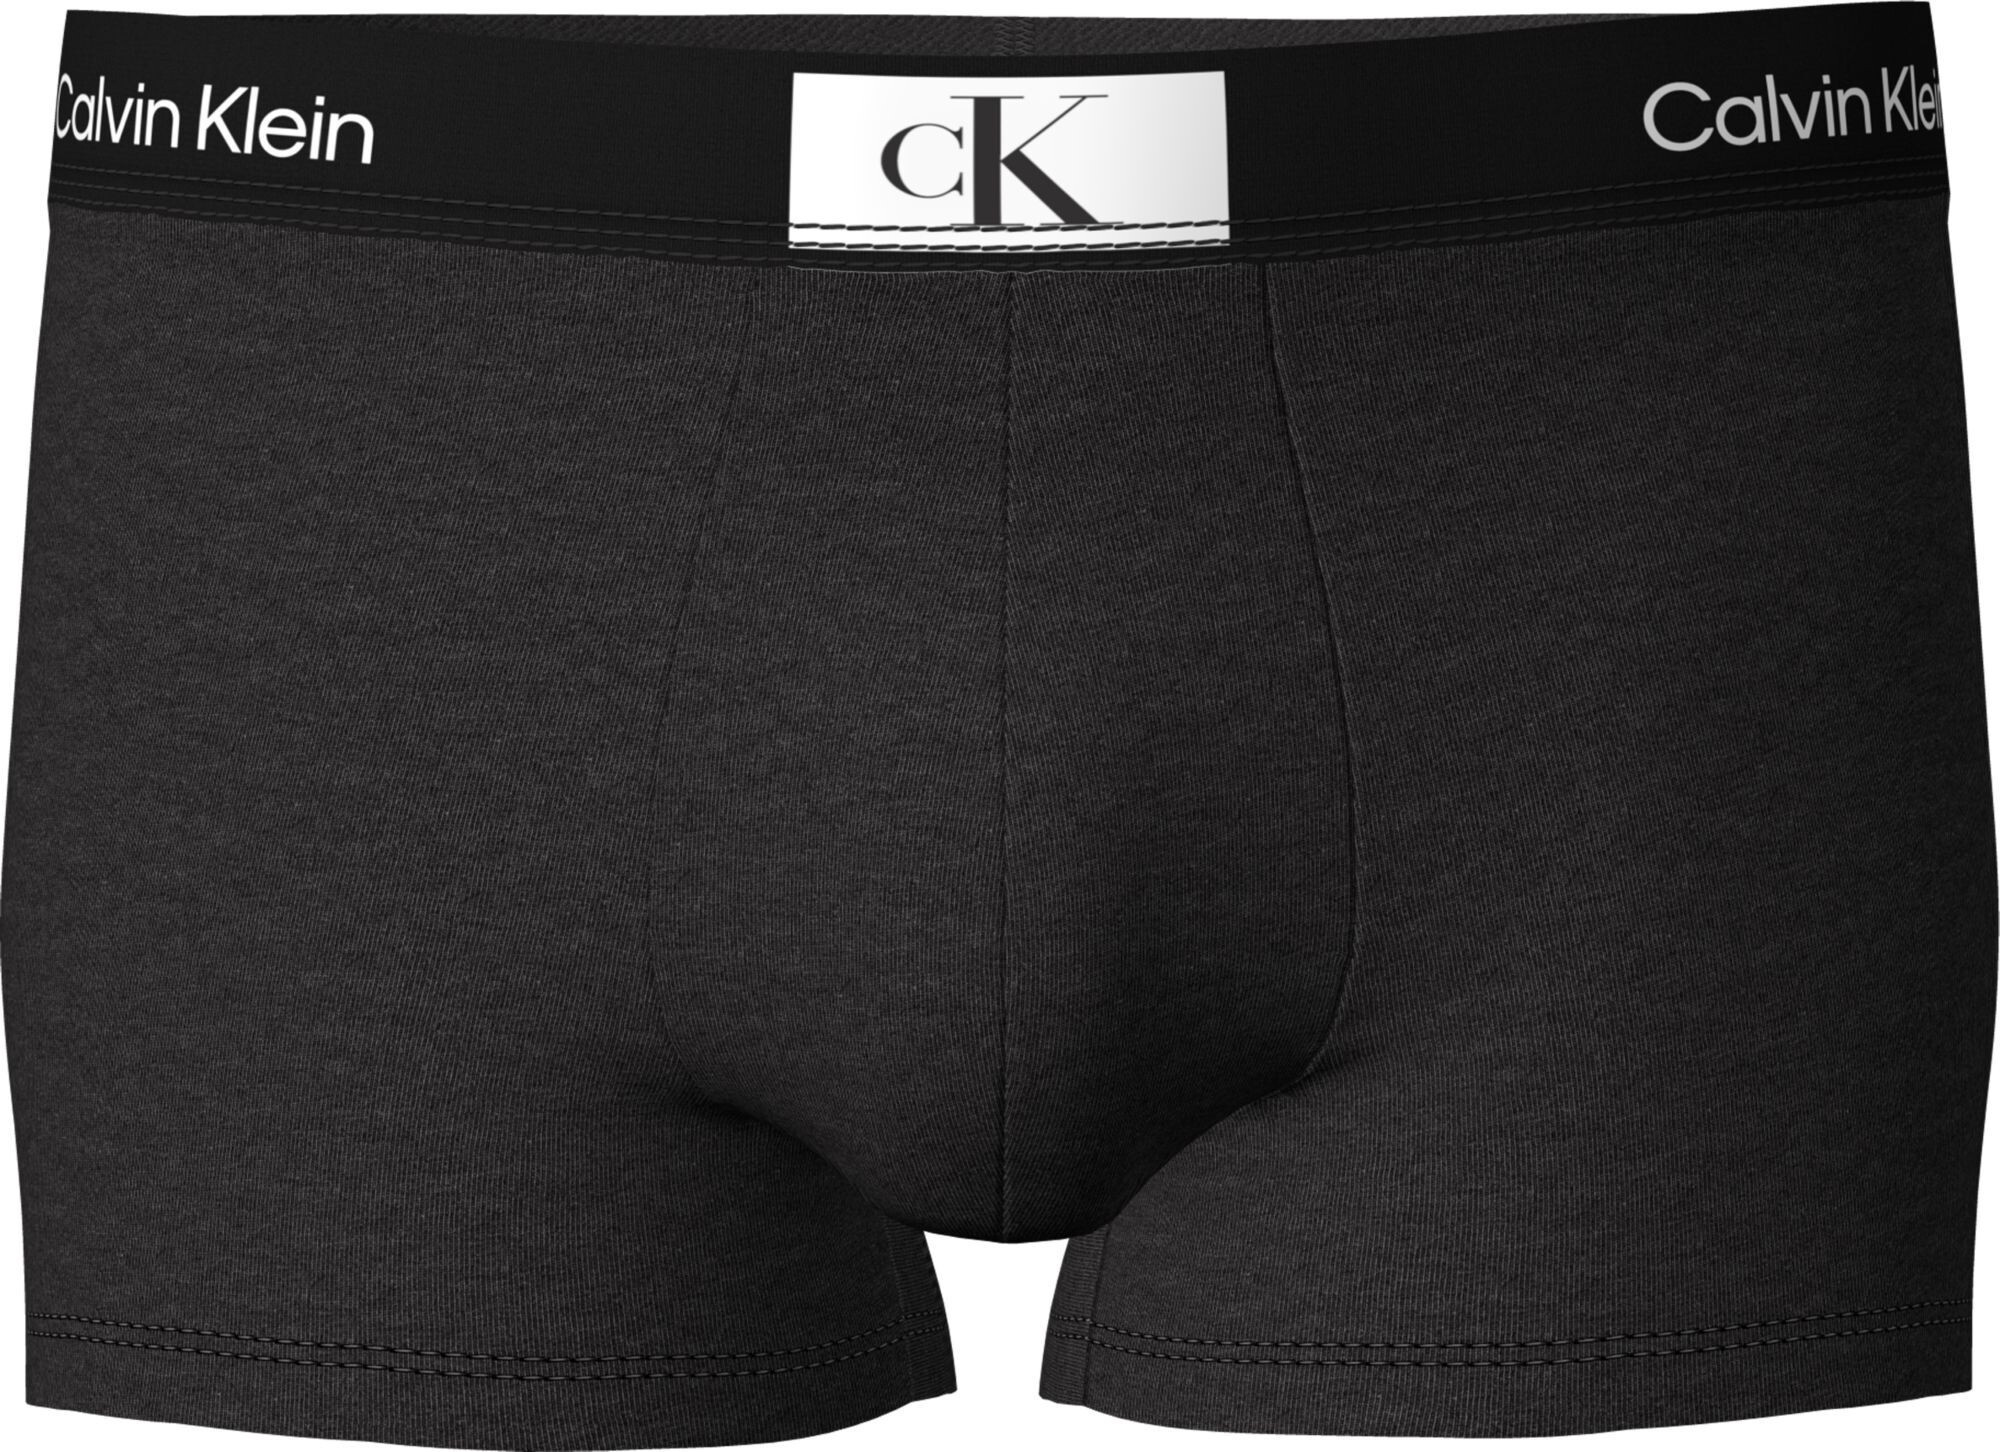 Pánské boxerky Calvin Klein s krátkou nohavičkou NB3403A černá M